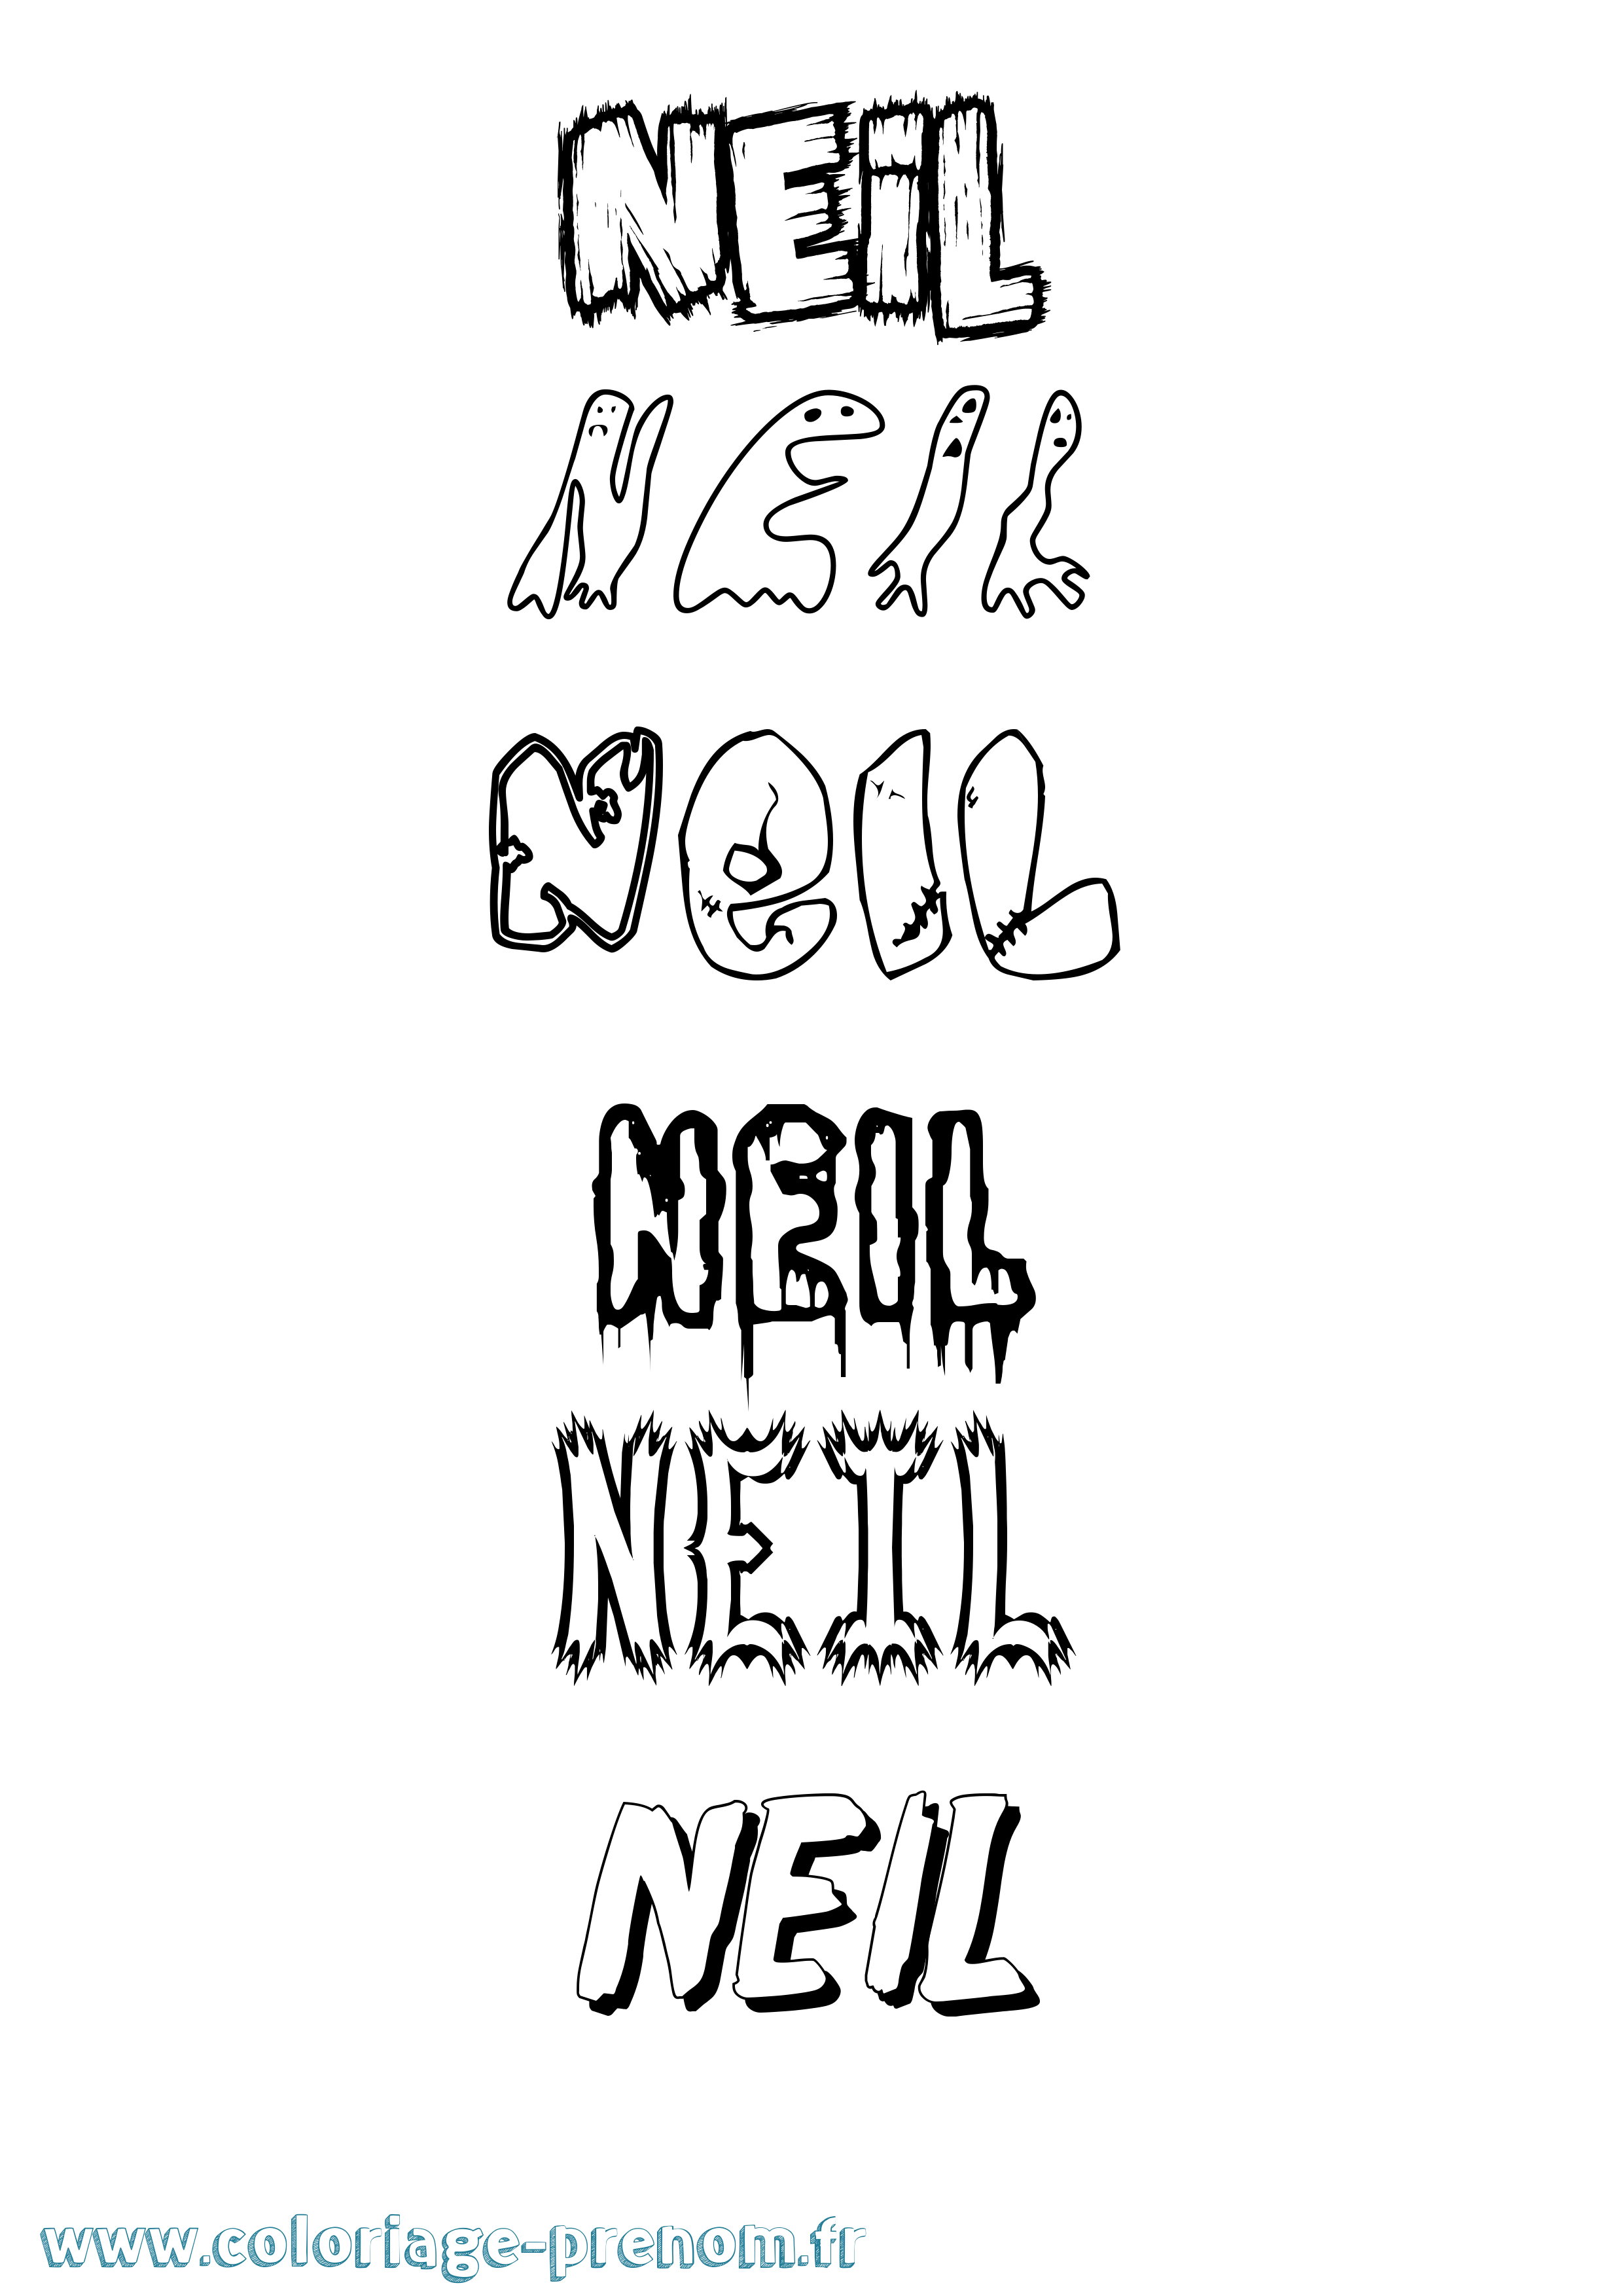 Coloriage prénom Neil Frisson